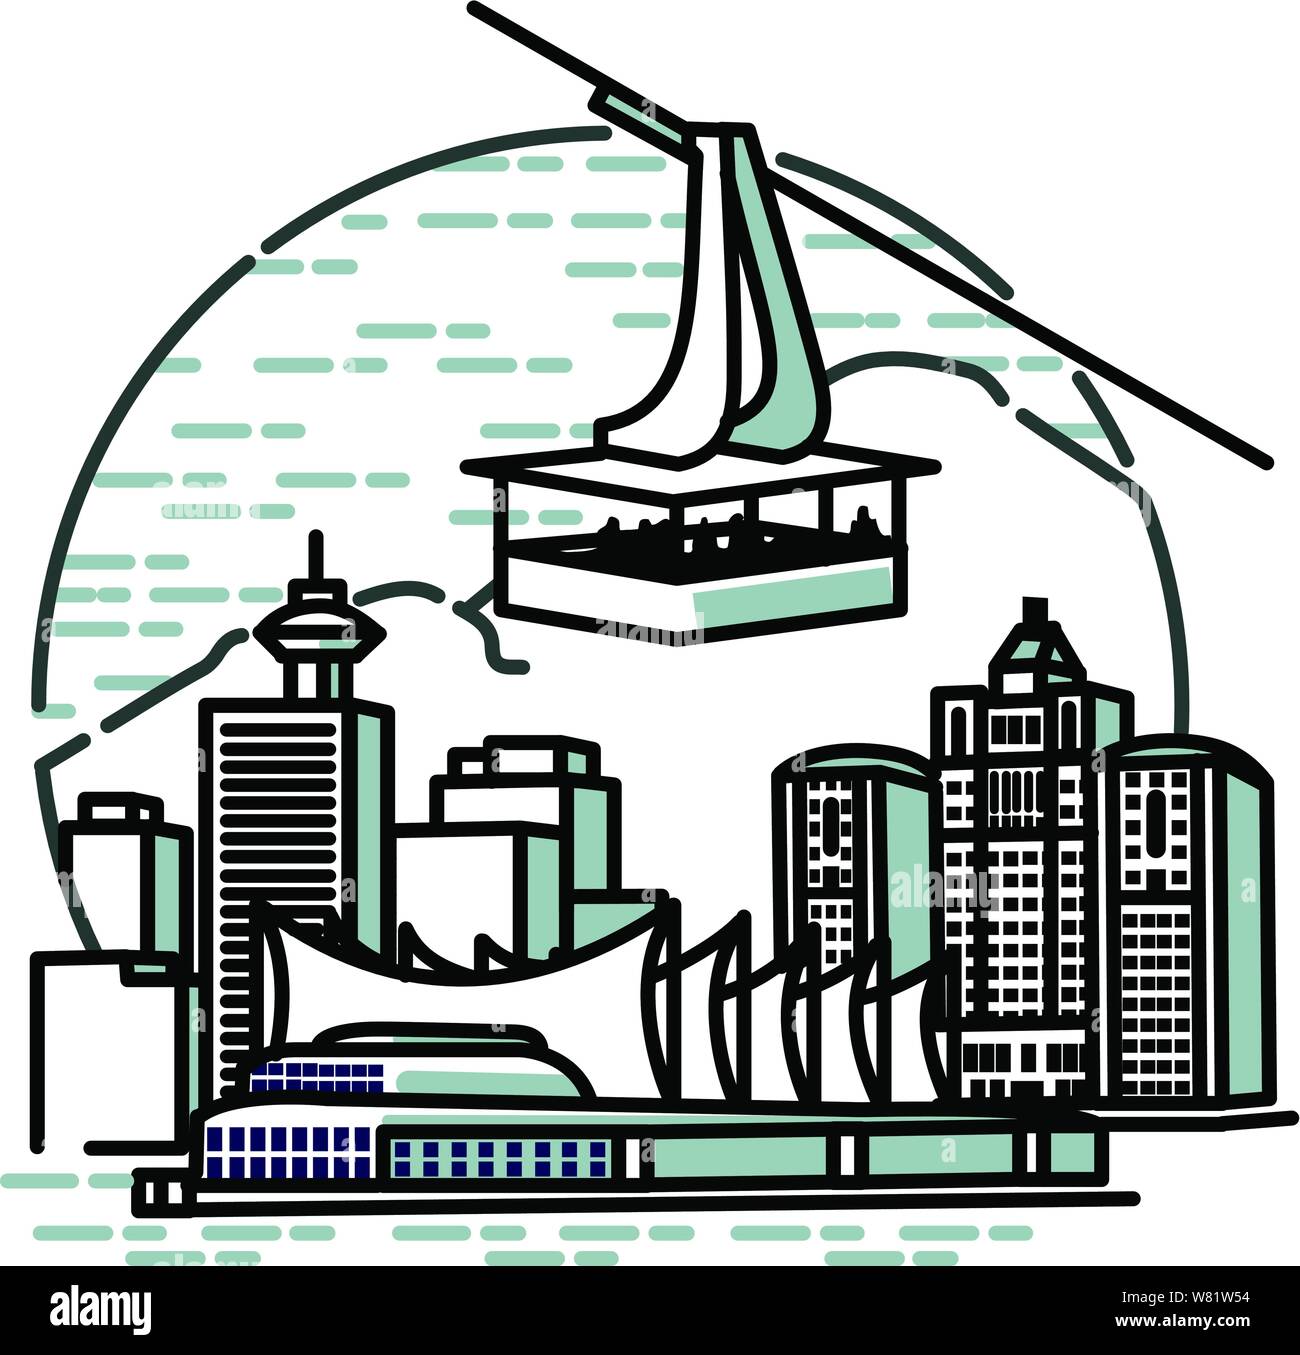 Canada Place à Vancouver entouré par l'eau des grands immeubles tours avec un vverthe tram sky city Illustration de Vecteur